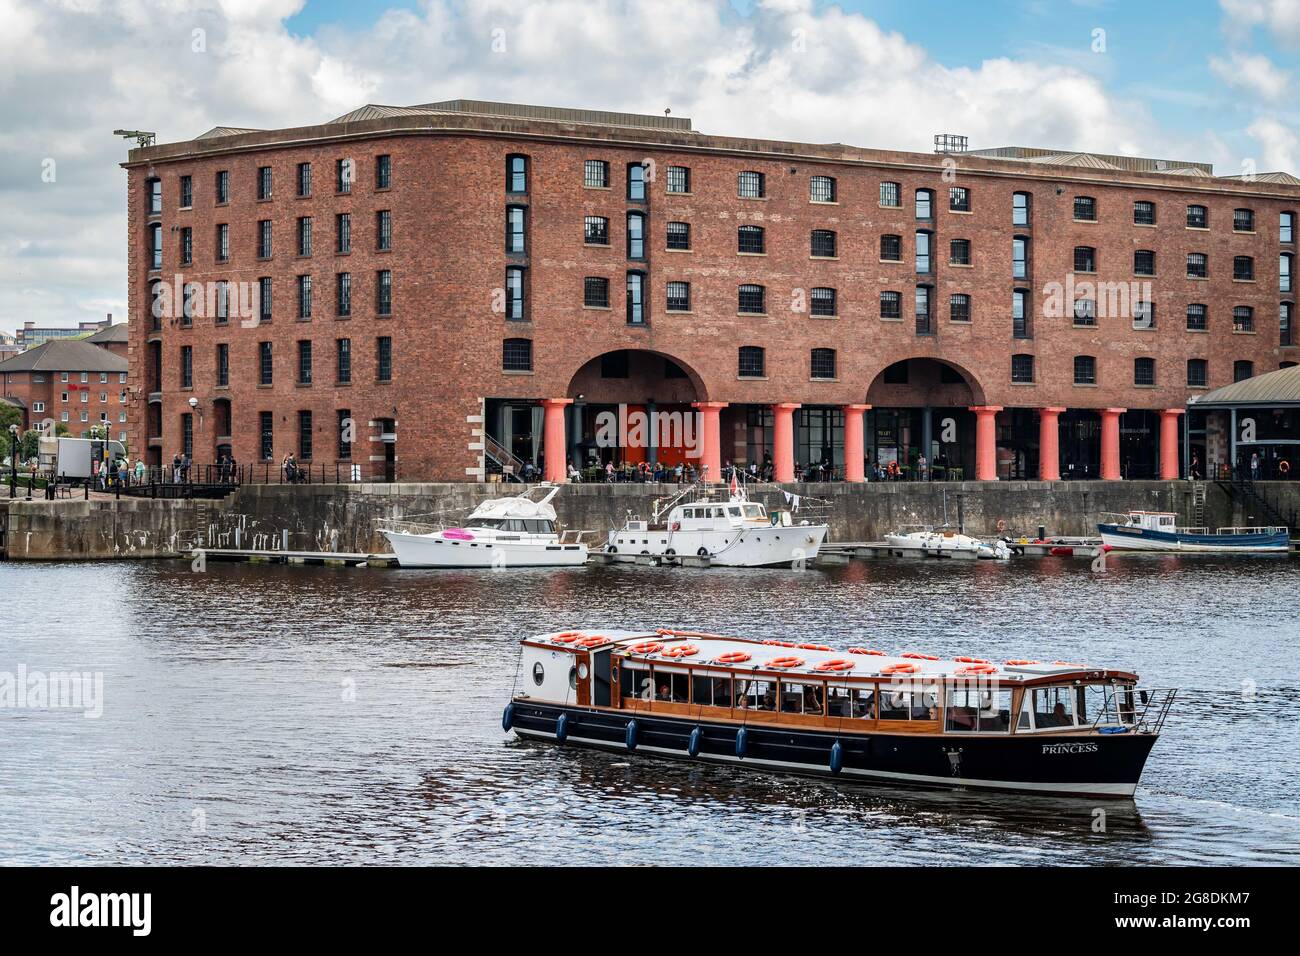 Liverpool sitios del patrimonio. Albert Dock. Foto de stock